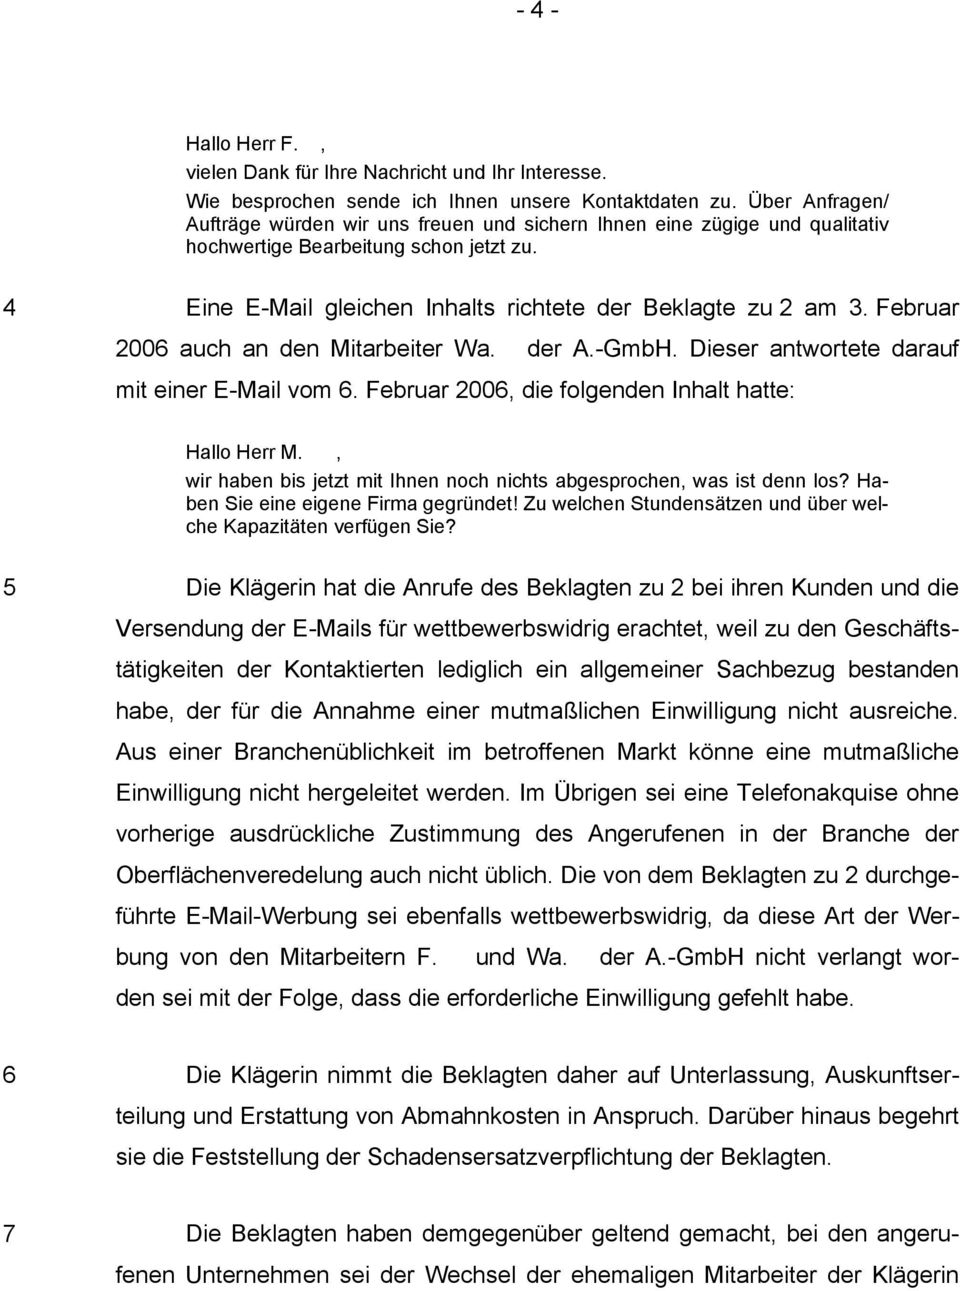 Februar 2006 auch an den Mitarbeiter Wa. der A.-GmbH. Dieser antwortete darauf mit einer E-Mail vom 6. Februar 2006, die folgenden Inhalt hatte: Hallo Herr M.